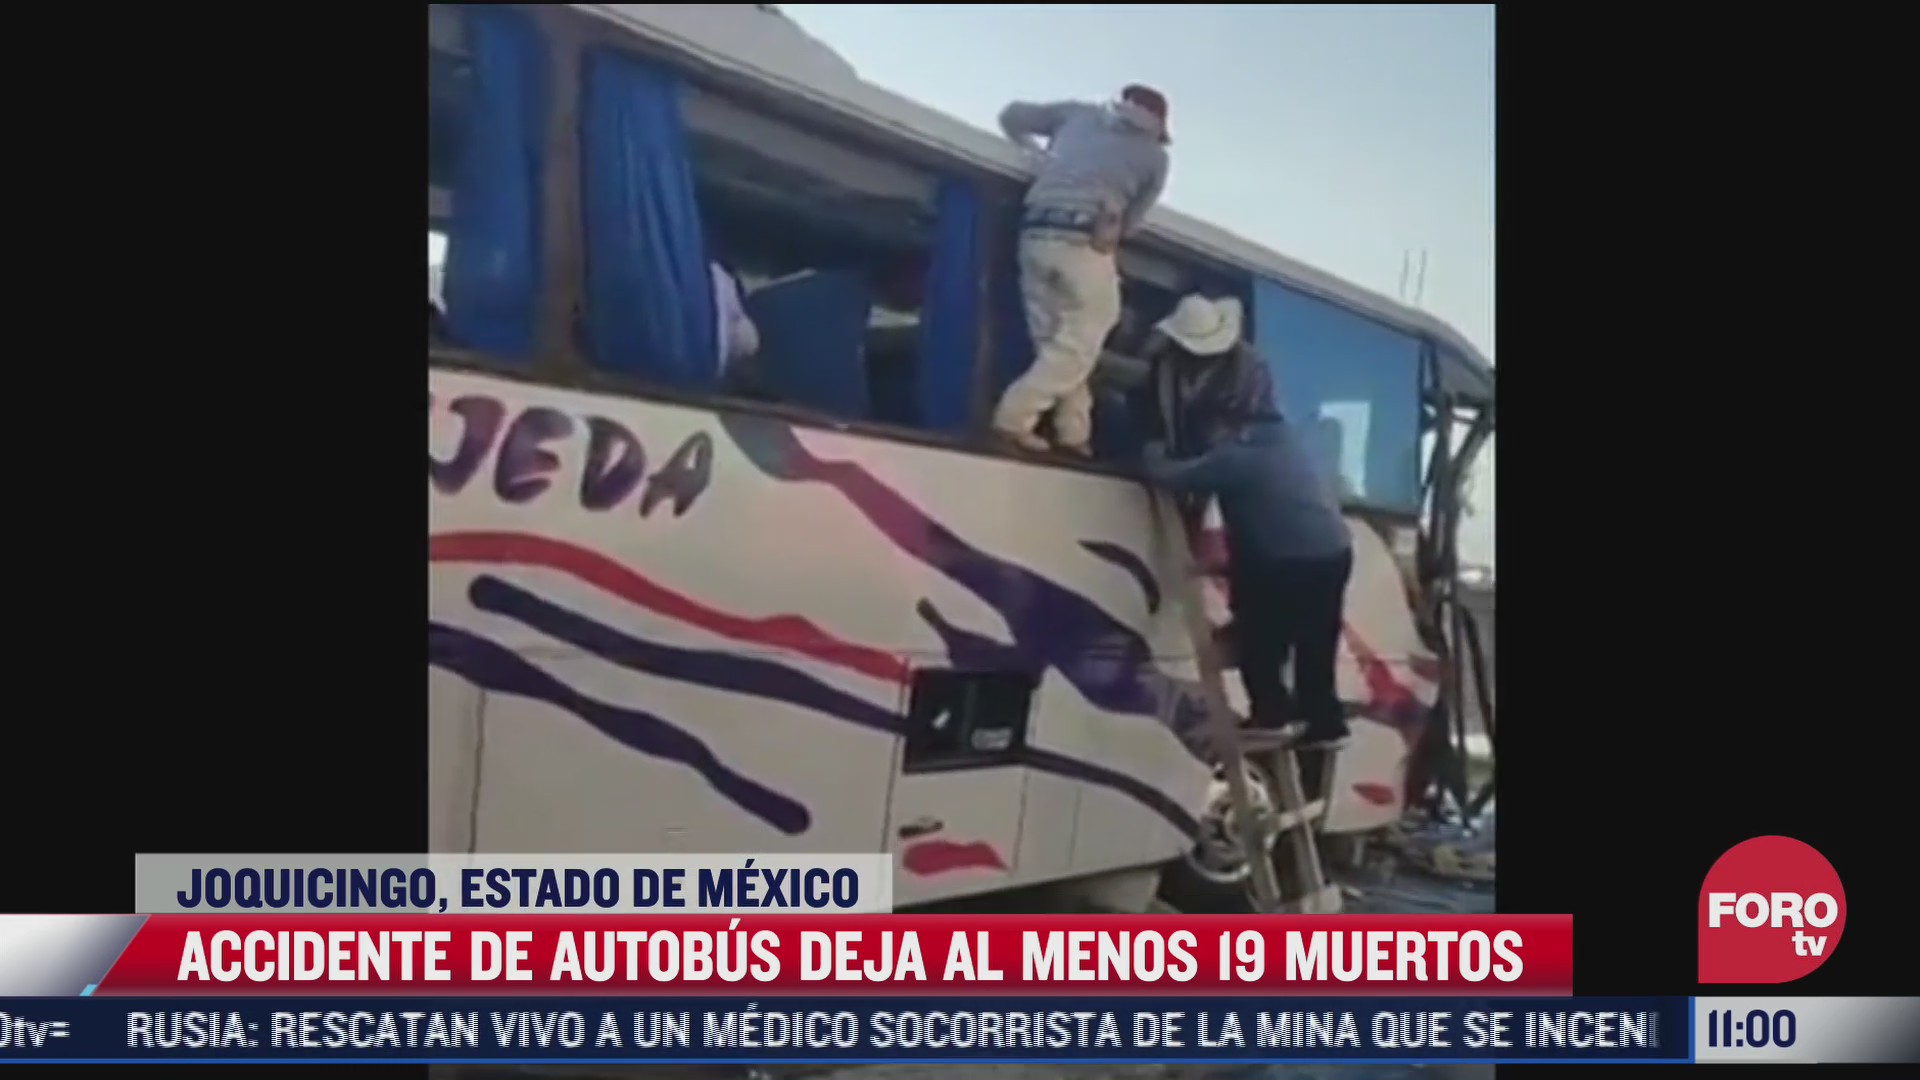 Autobús de pasajeros choca contra una vivienda en Joquicingo, Estado de México